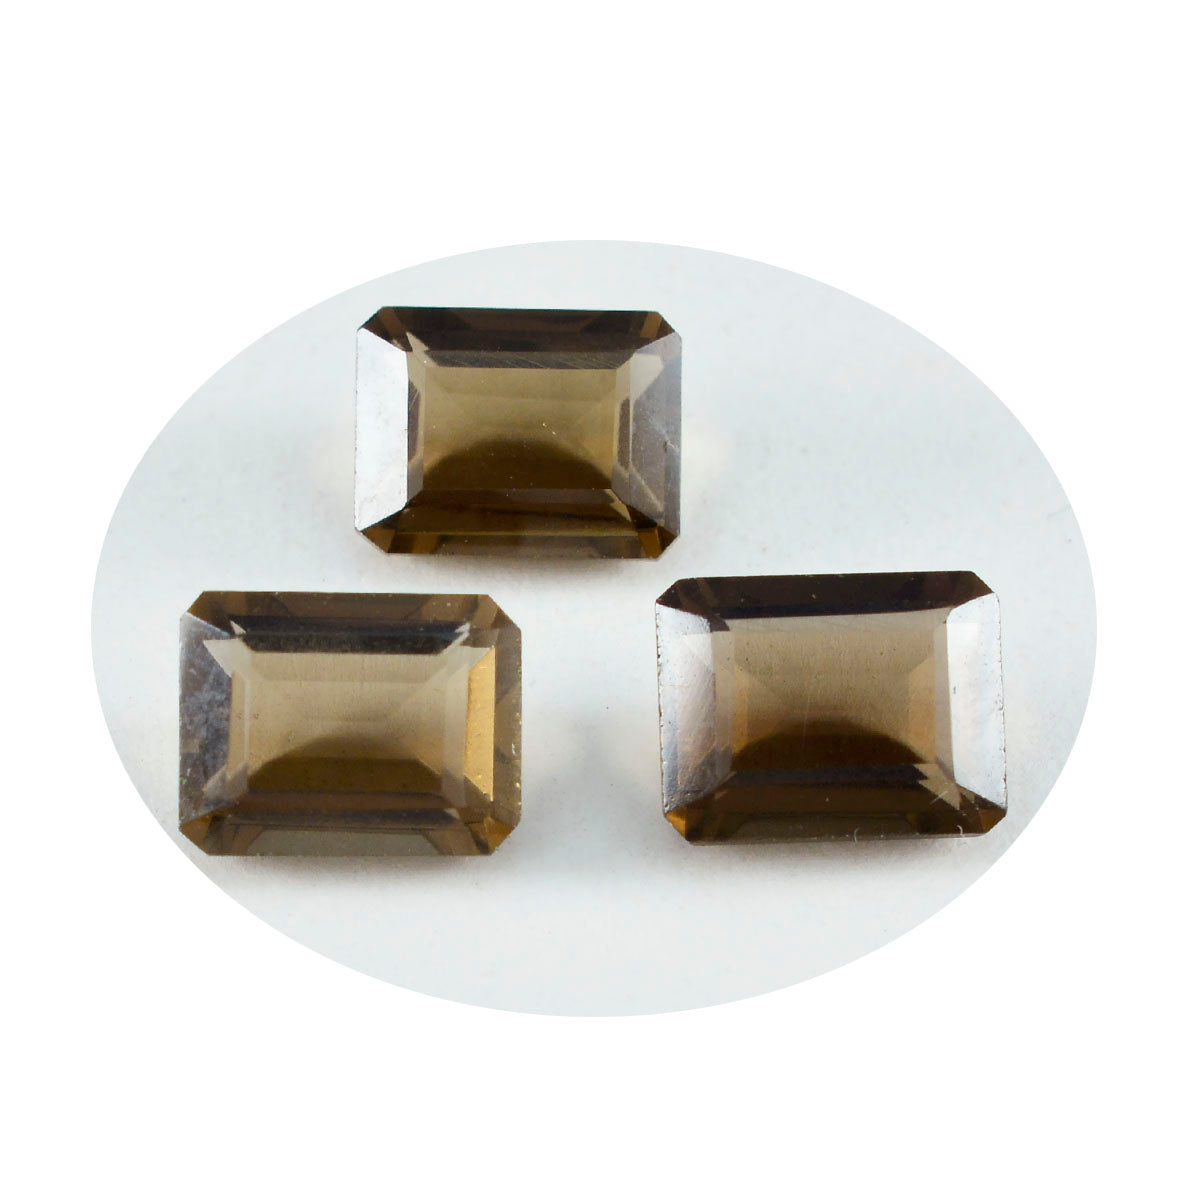 riyogems 1 шт. натуральный коричневый дымчатый кварц ограненный 7x9 мм восьмиугольной формы драгоценный камень потрясающего качества